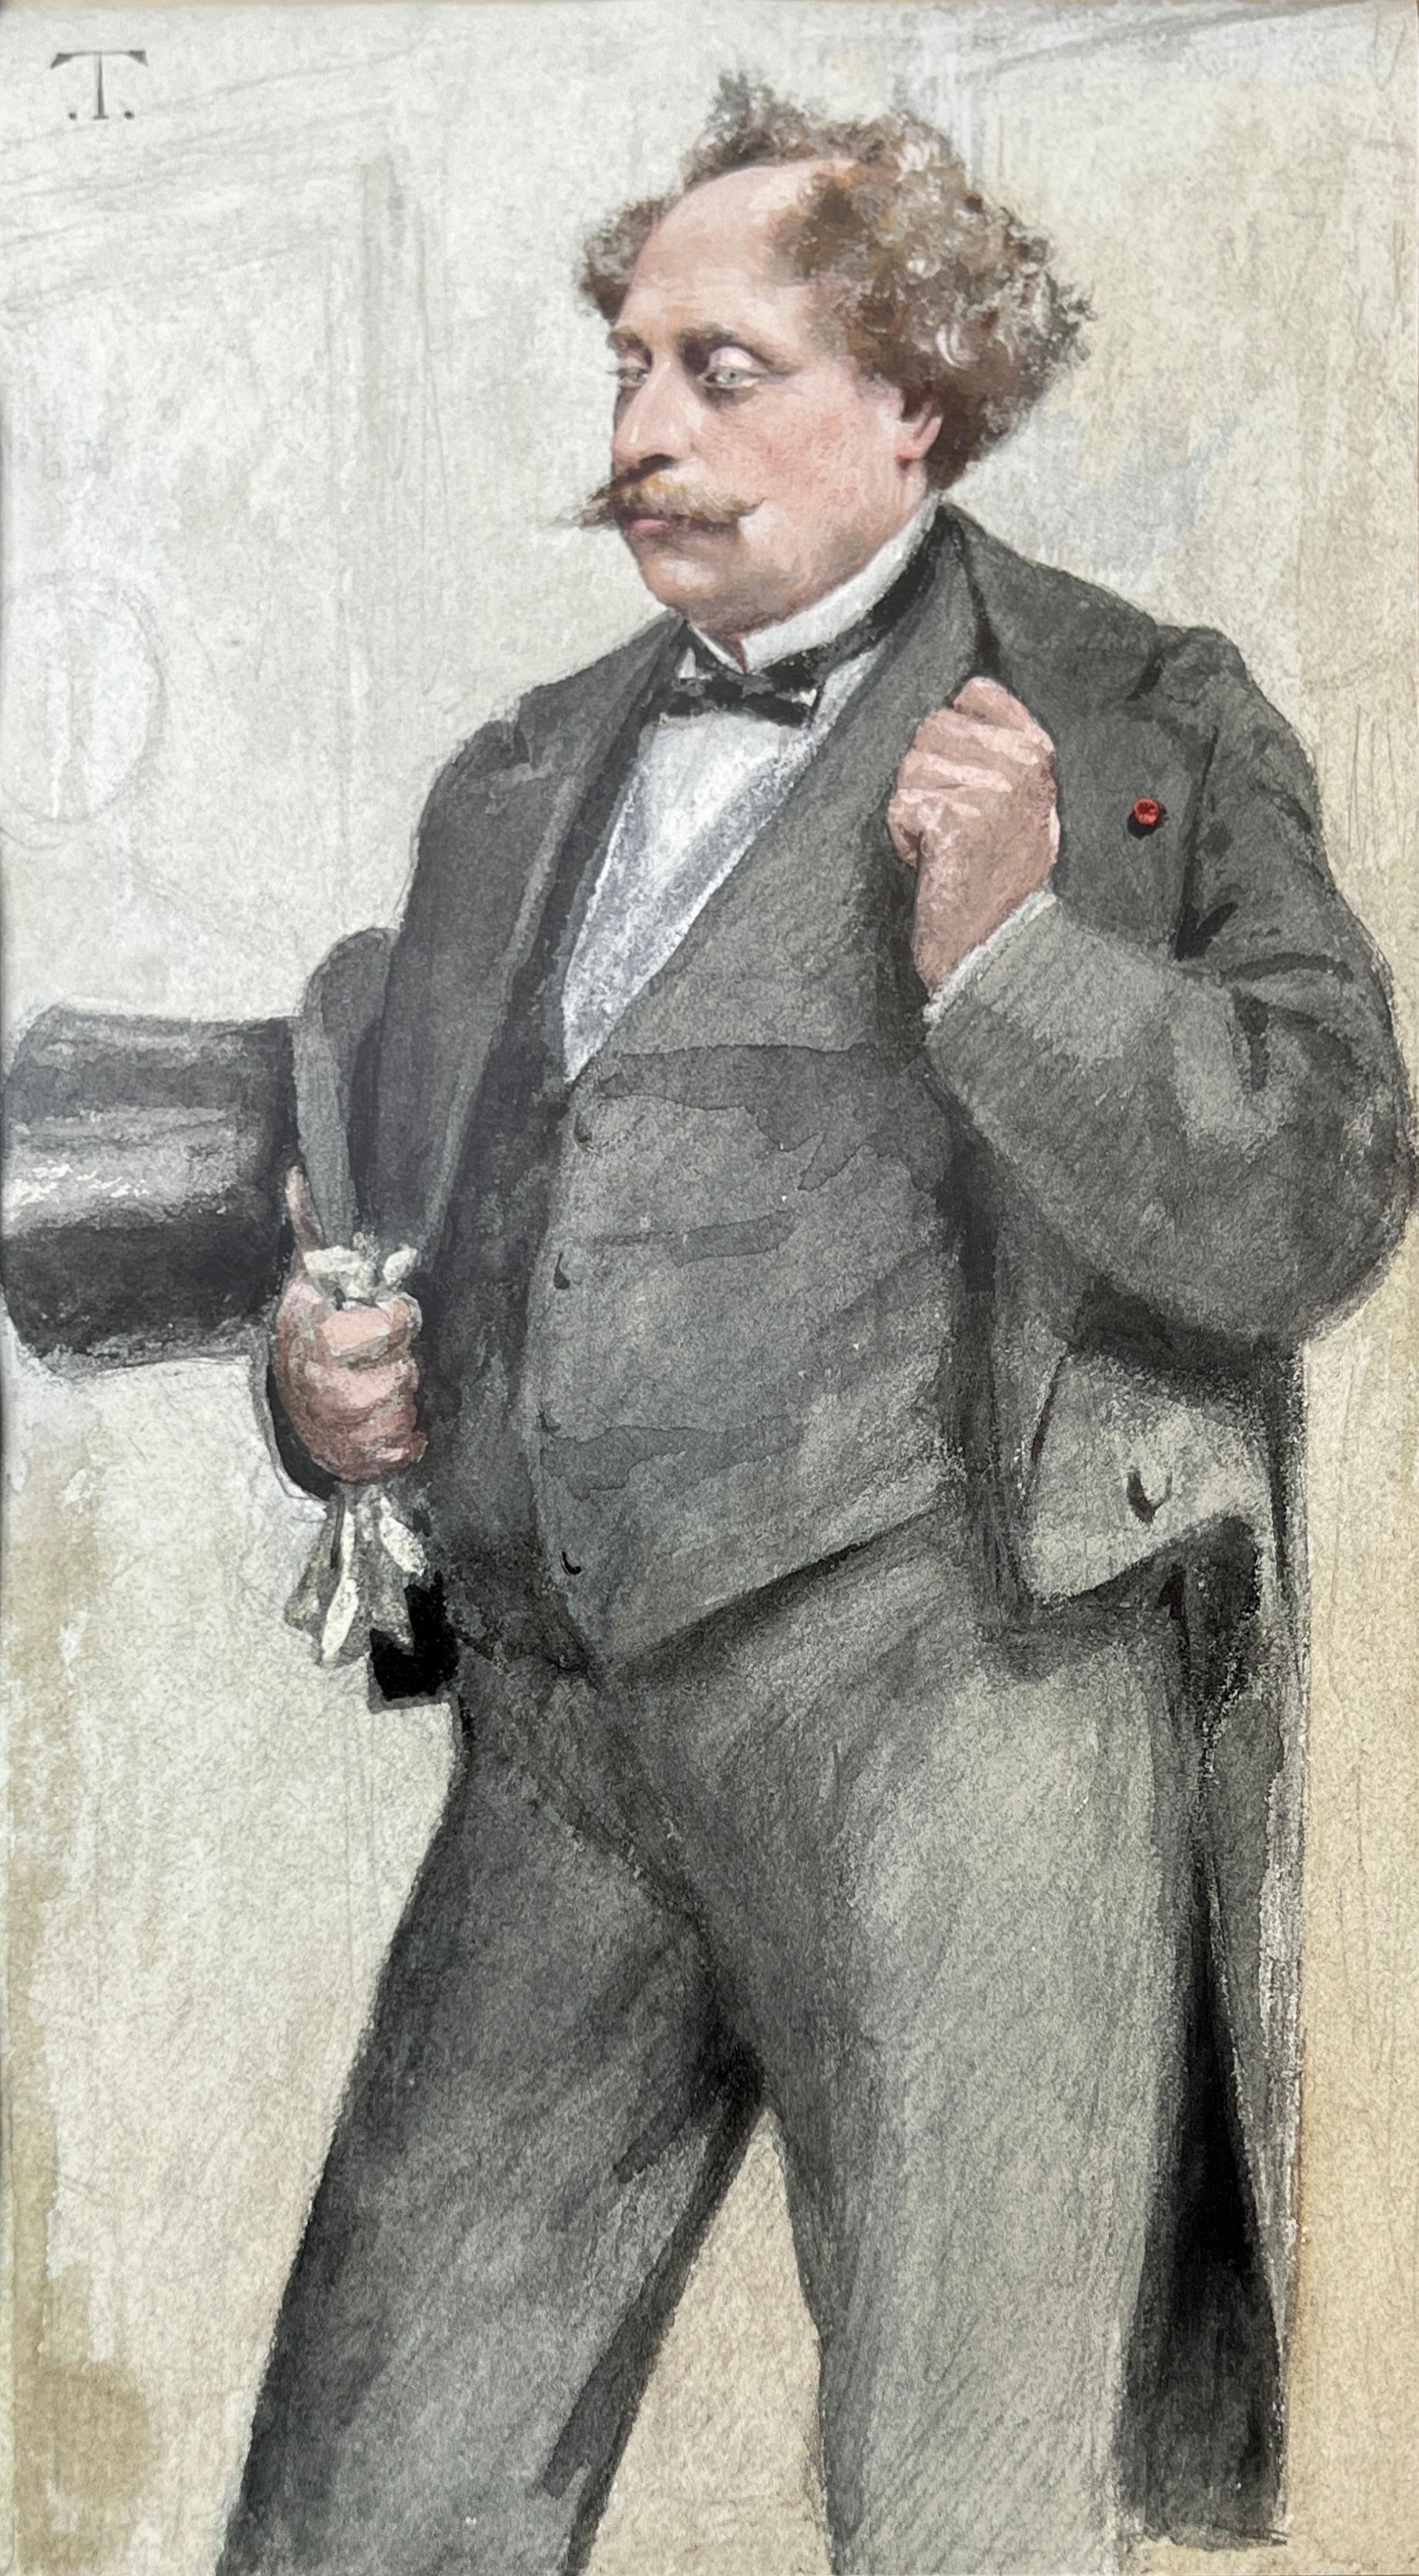 Unser Porträt von Alexandre Dumas fils (1824-1895) in Bleistift und Aquarell mit Weißhöhungen von Theobald Chartran (1849-1907) ist das Original, das in der Ausgabe der Vanity Fair vom 27. Dezember 1879 abgebildet war. Hier montiert unter einer